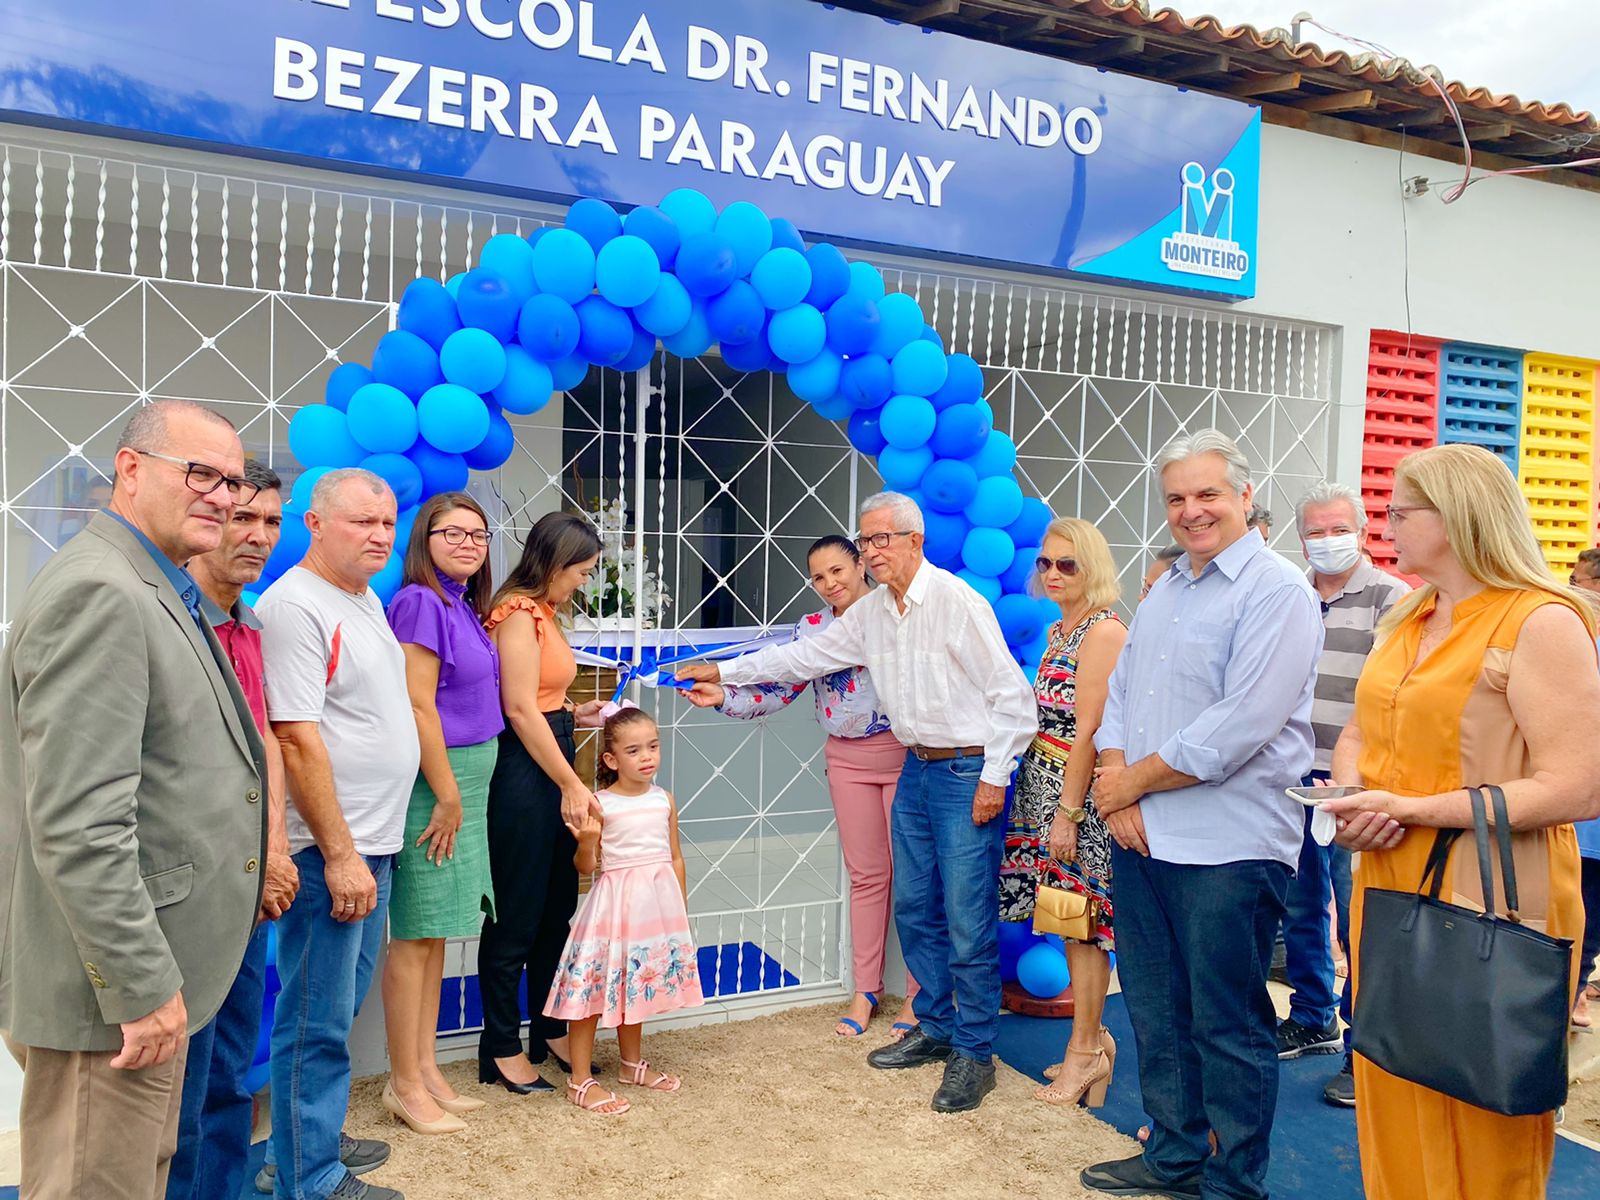 Creche-FBP23 Comunidade da Vila Santa Maria comemora a entrega da reforma da Creche Dr. Fernando Bezerra Paraguay